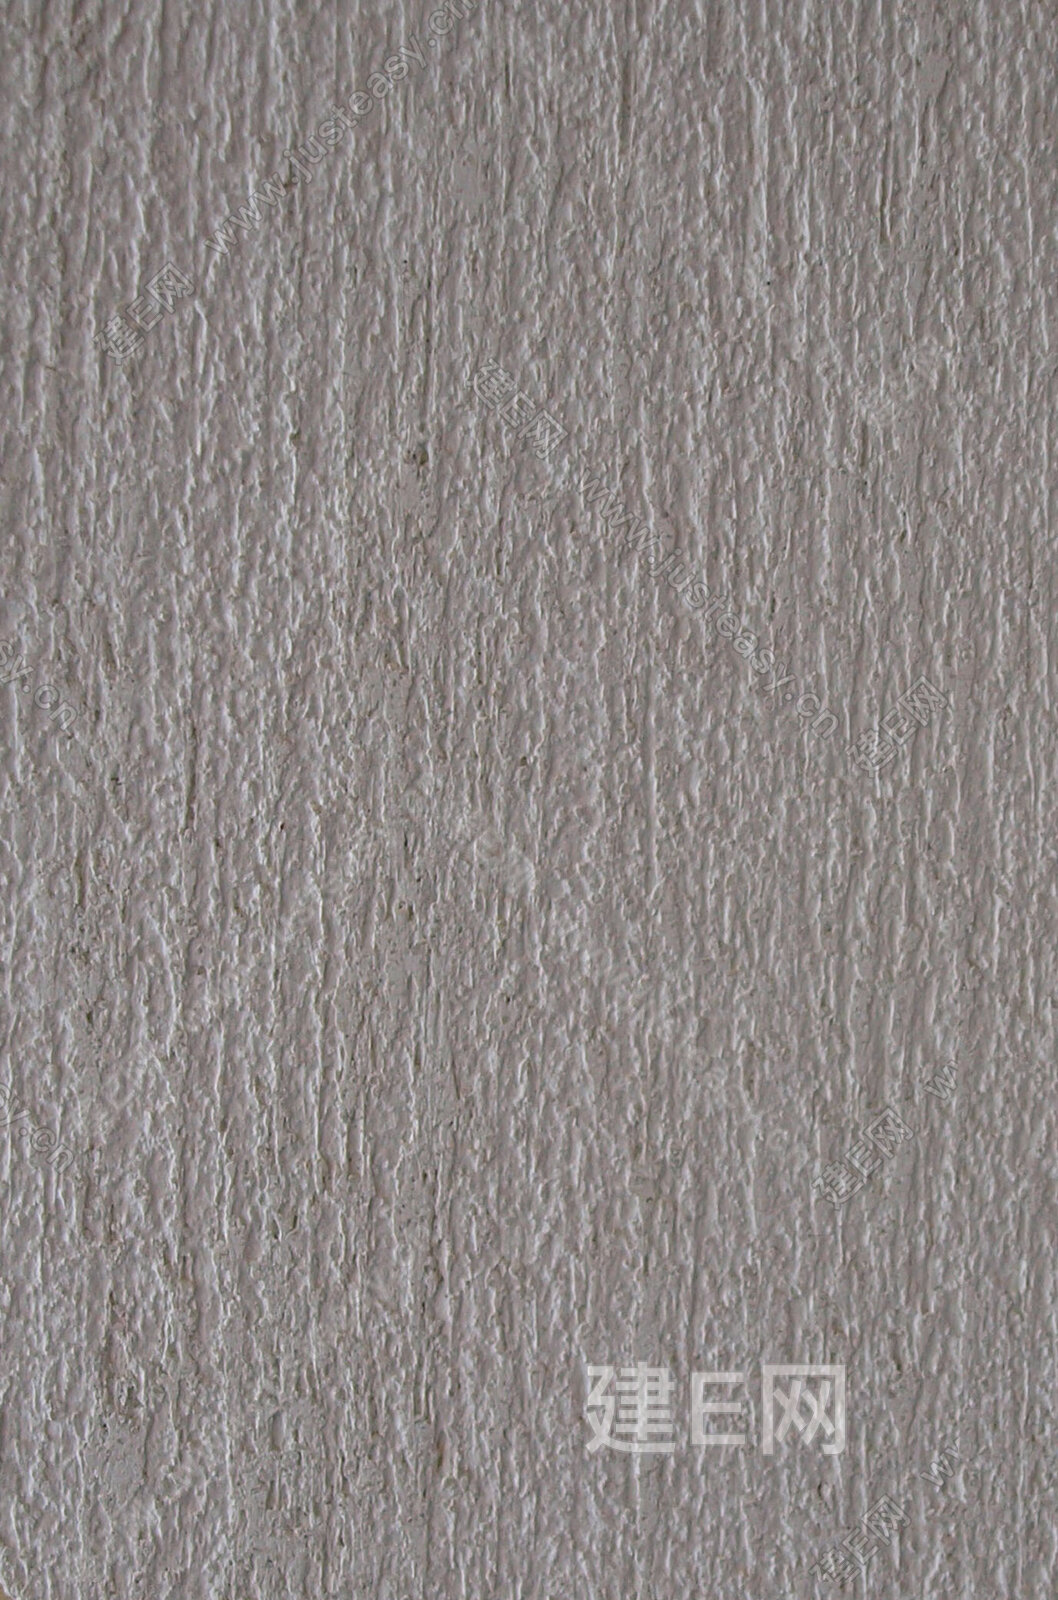 粗糙肌理漆机理墙面硅藻泥 (17)材质贴图下载-【集简空间】「每日更新」